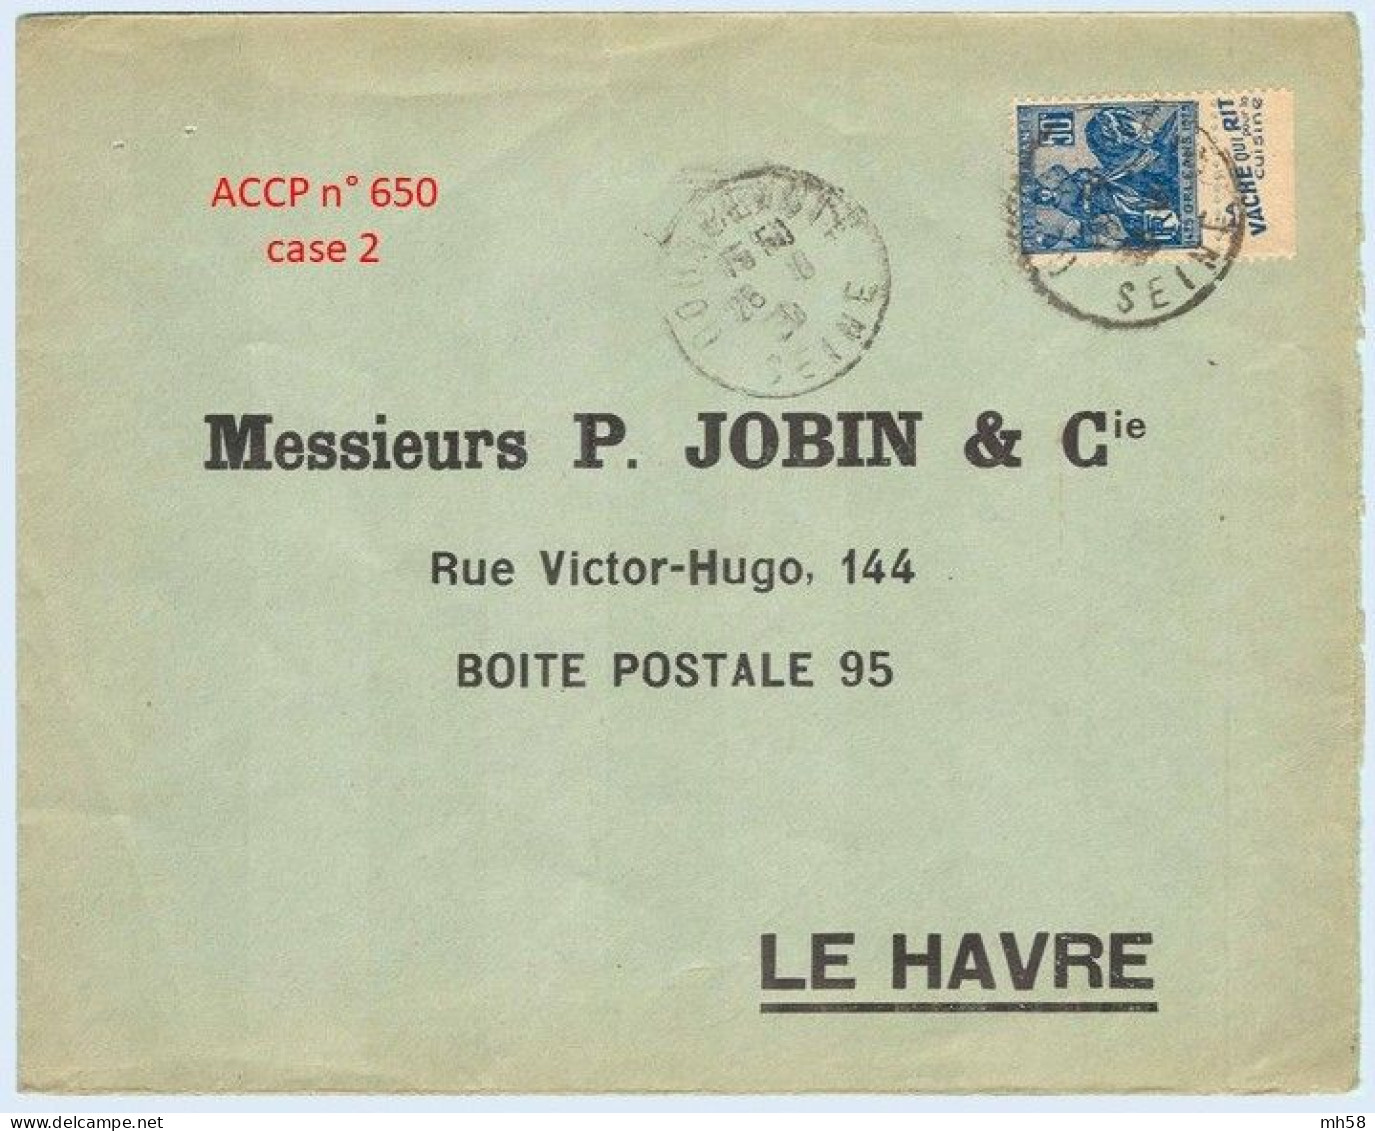 FRANCE - Lettre Avec Pub De Carnet : Vache Qui Rit Pour La Cuisine - N° 257 50c Jeanne D'Arc Type I - Covers & Documents